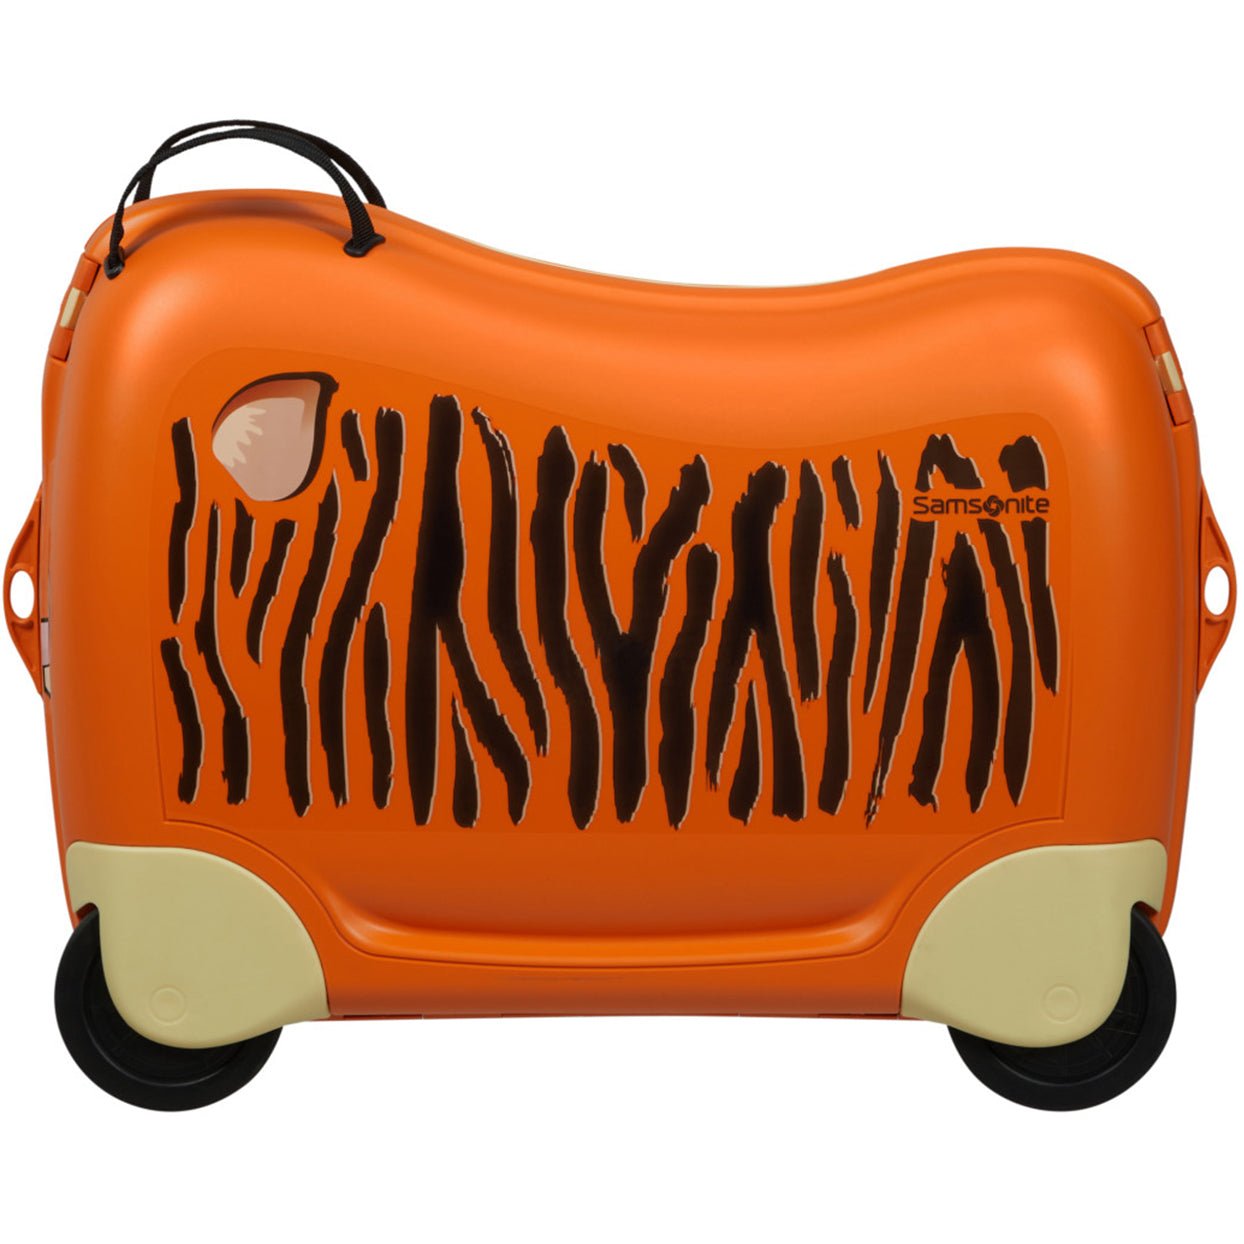 Samsonite Dream2Go Ride-On Suitcase 52 cm - Motorbike